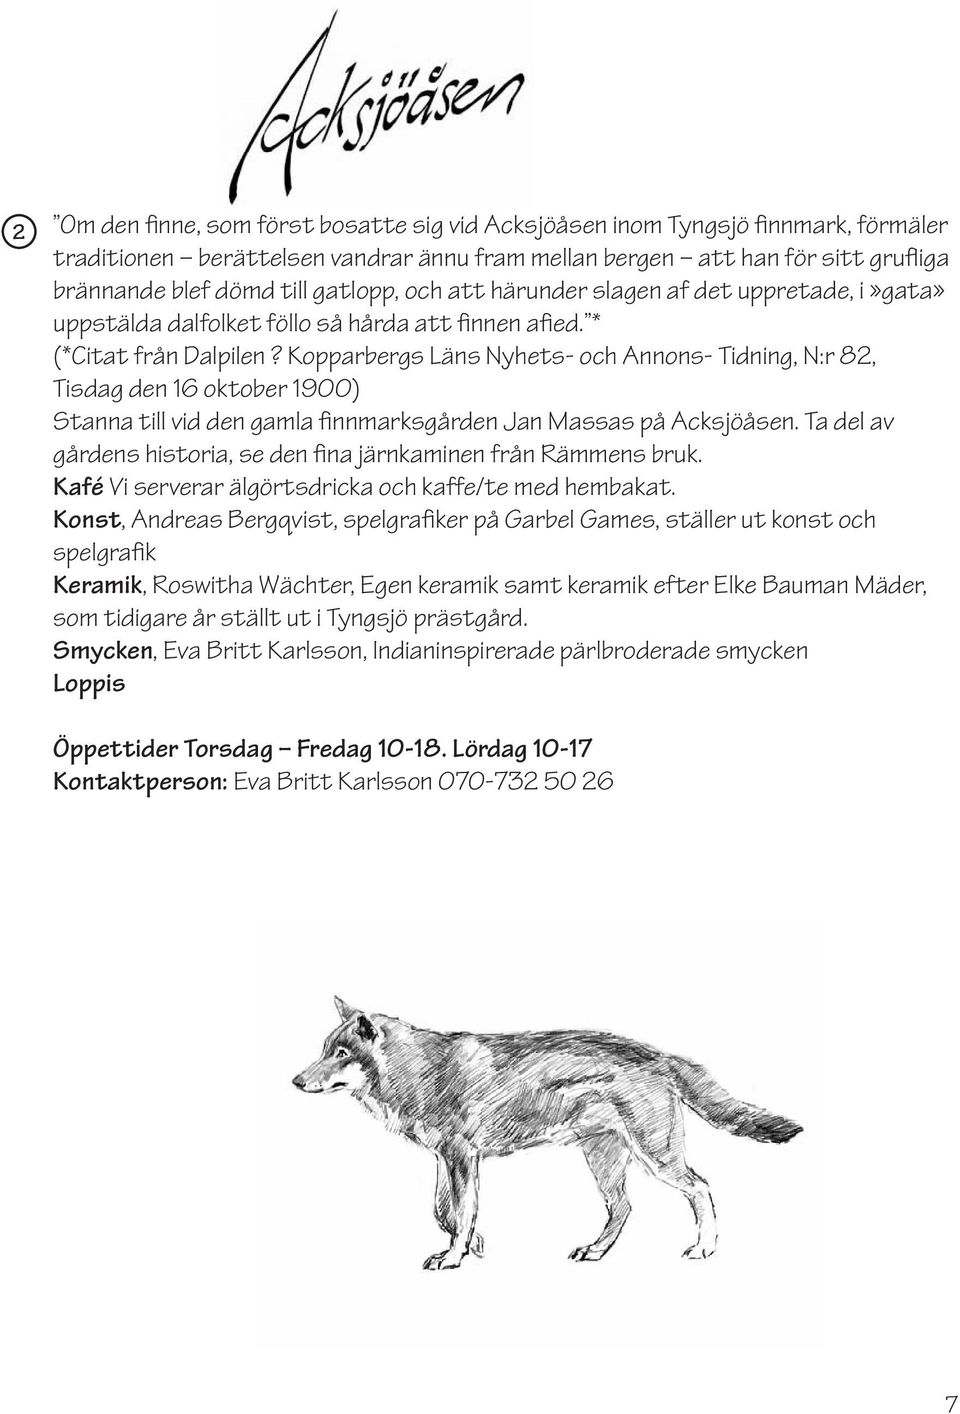 Kopparbergs Läns Nyhets- och Annons- Tidning, N:r 82, Tisdag den 16 oktober 1900) Stanna till vid den gamla finnmarksgården Jan Massas på Acksjöåsen.